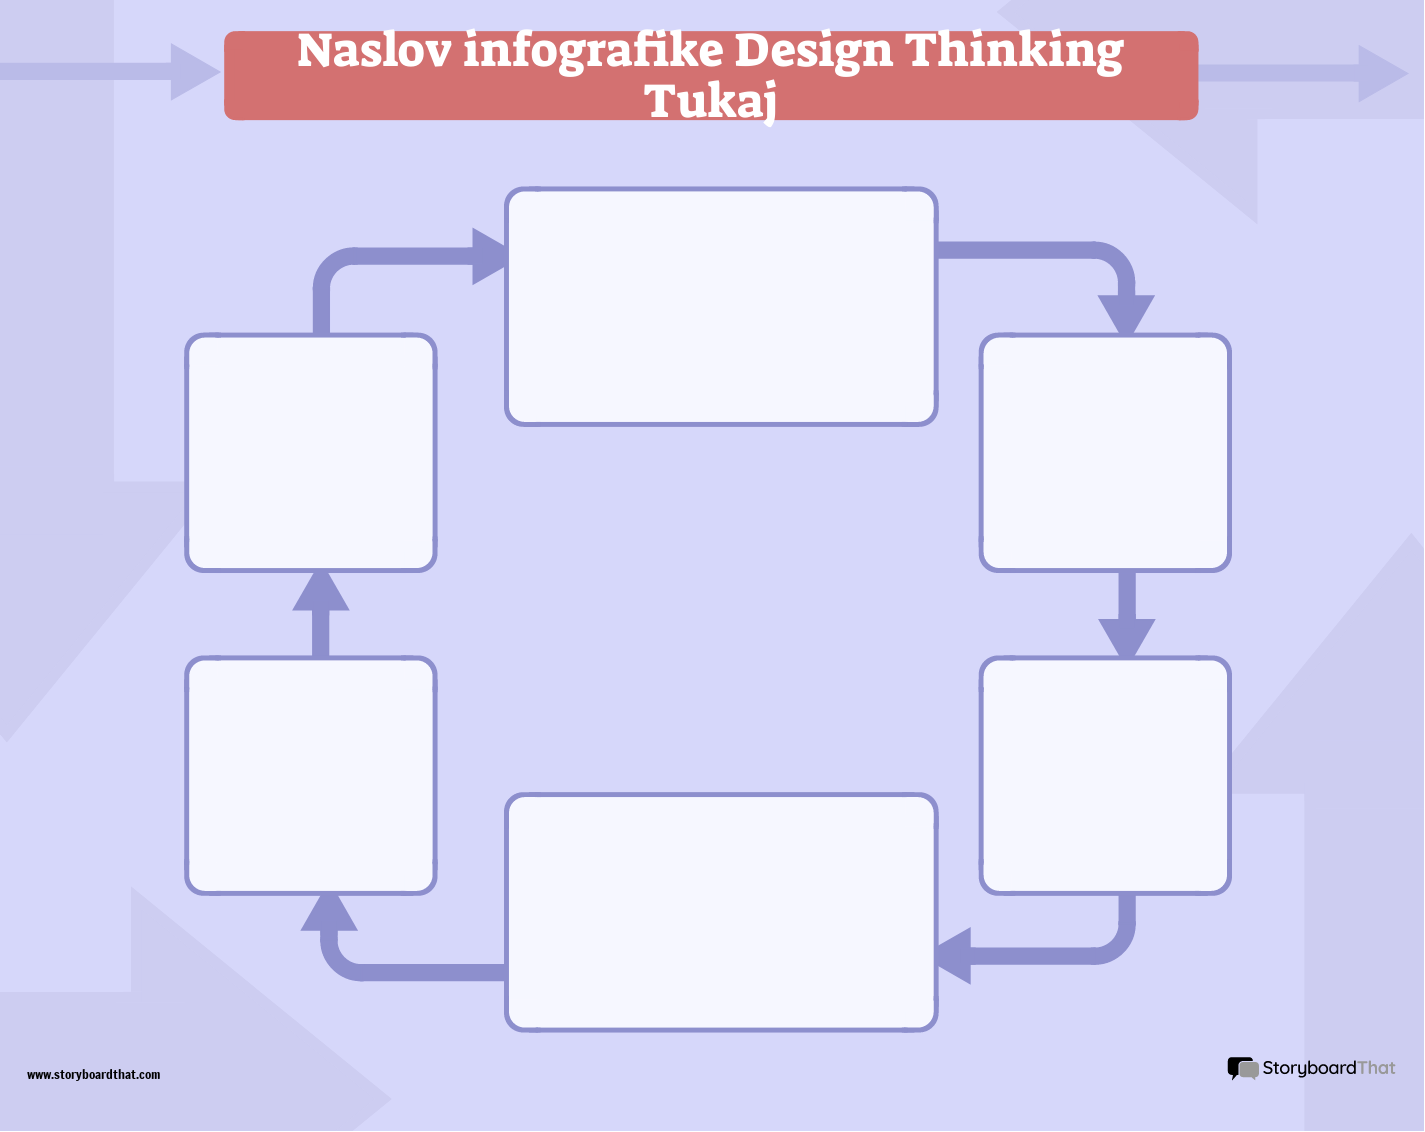 Infografska Predloga Corporate Design Thinking 1